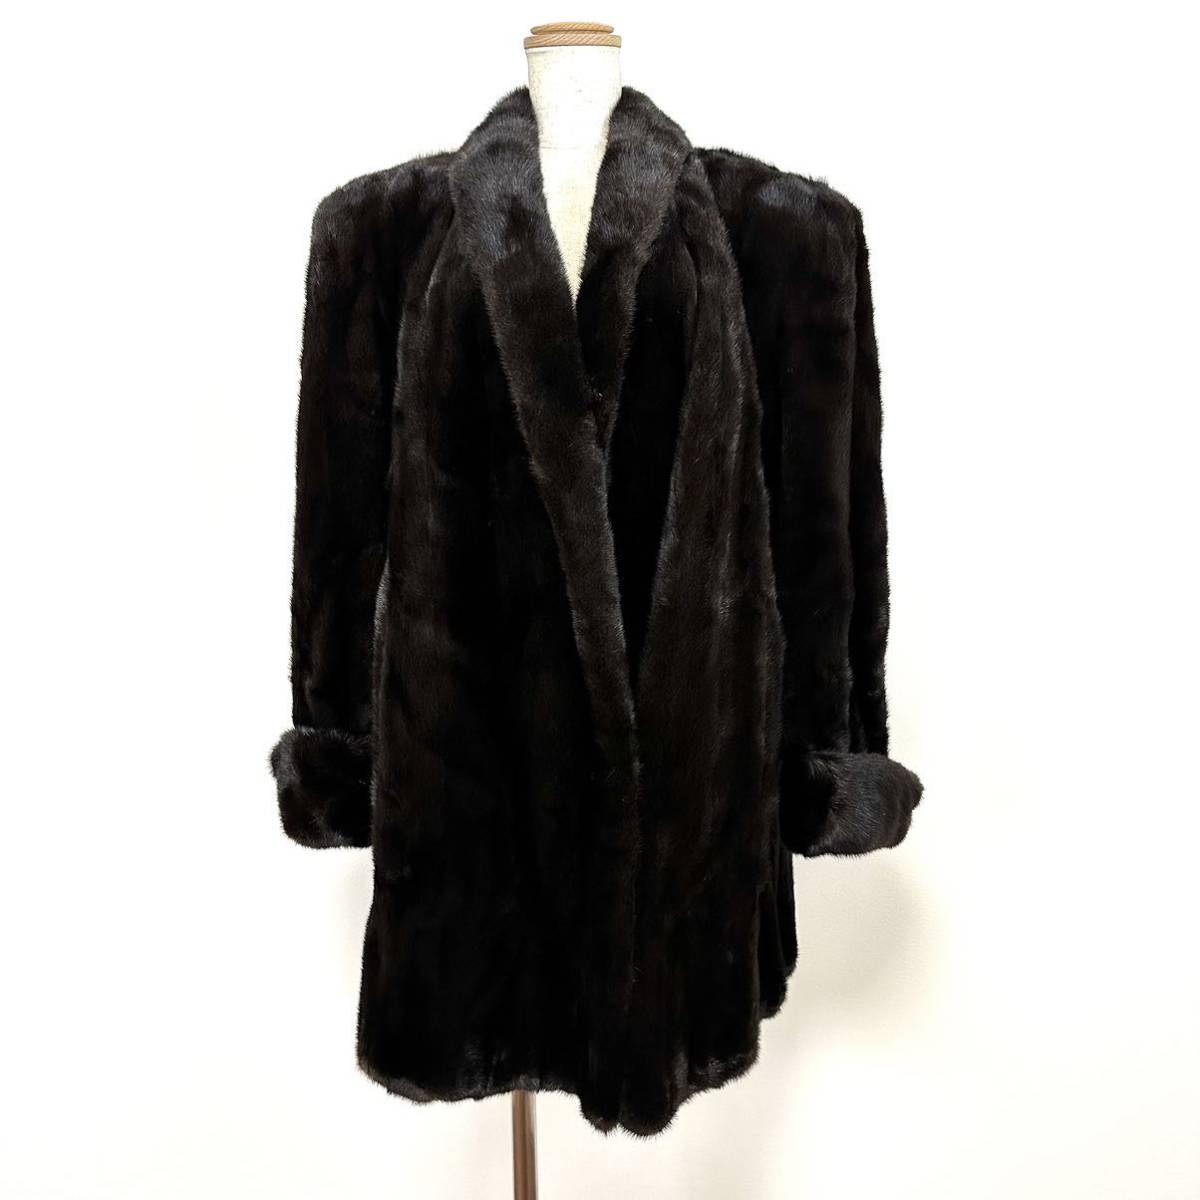 【貂商】h1092 BLACKGLAMA ブラックミンク ハーフコート デザインコートセミロング ミンクコート 貂皮 mink身丈 約80cm